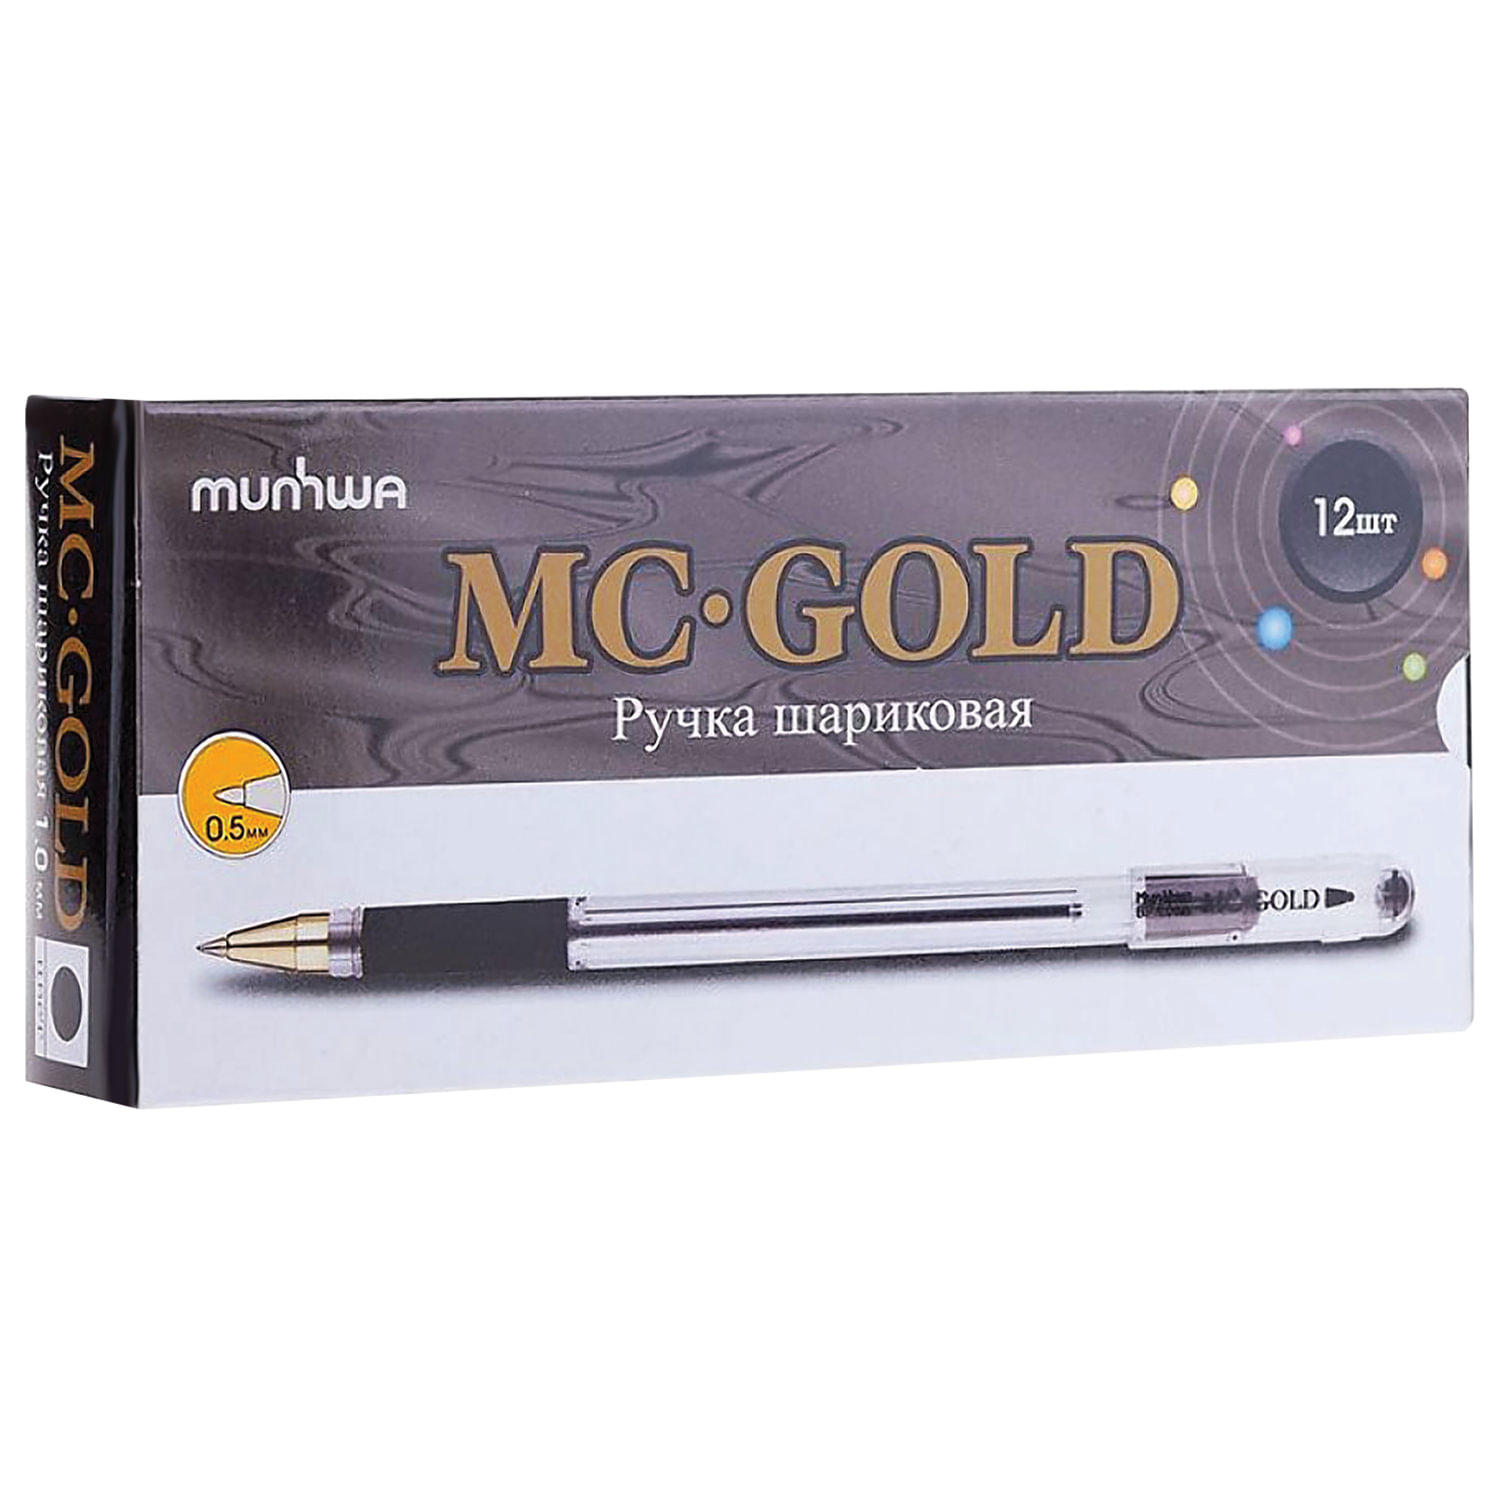 Mc gold ручка. Ручка шариковая MUNHWA MC Gold,  черные. Ручка МС Голд 0.5. Ручка шариковая MUNHWA MC Gold чёрная 0.5мм. Ручка MC Gold 0.5 черная.